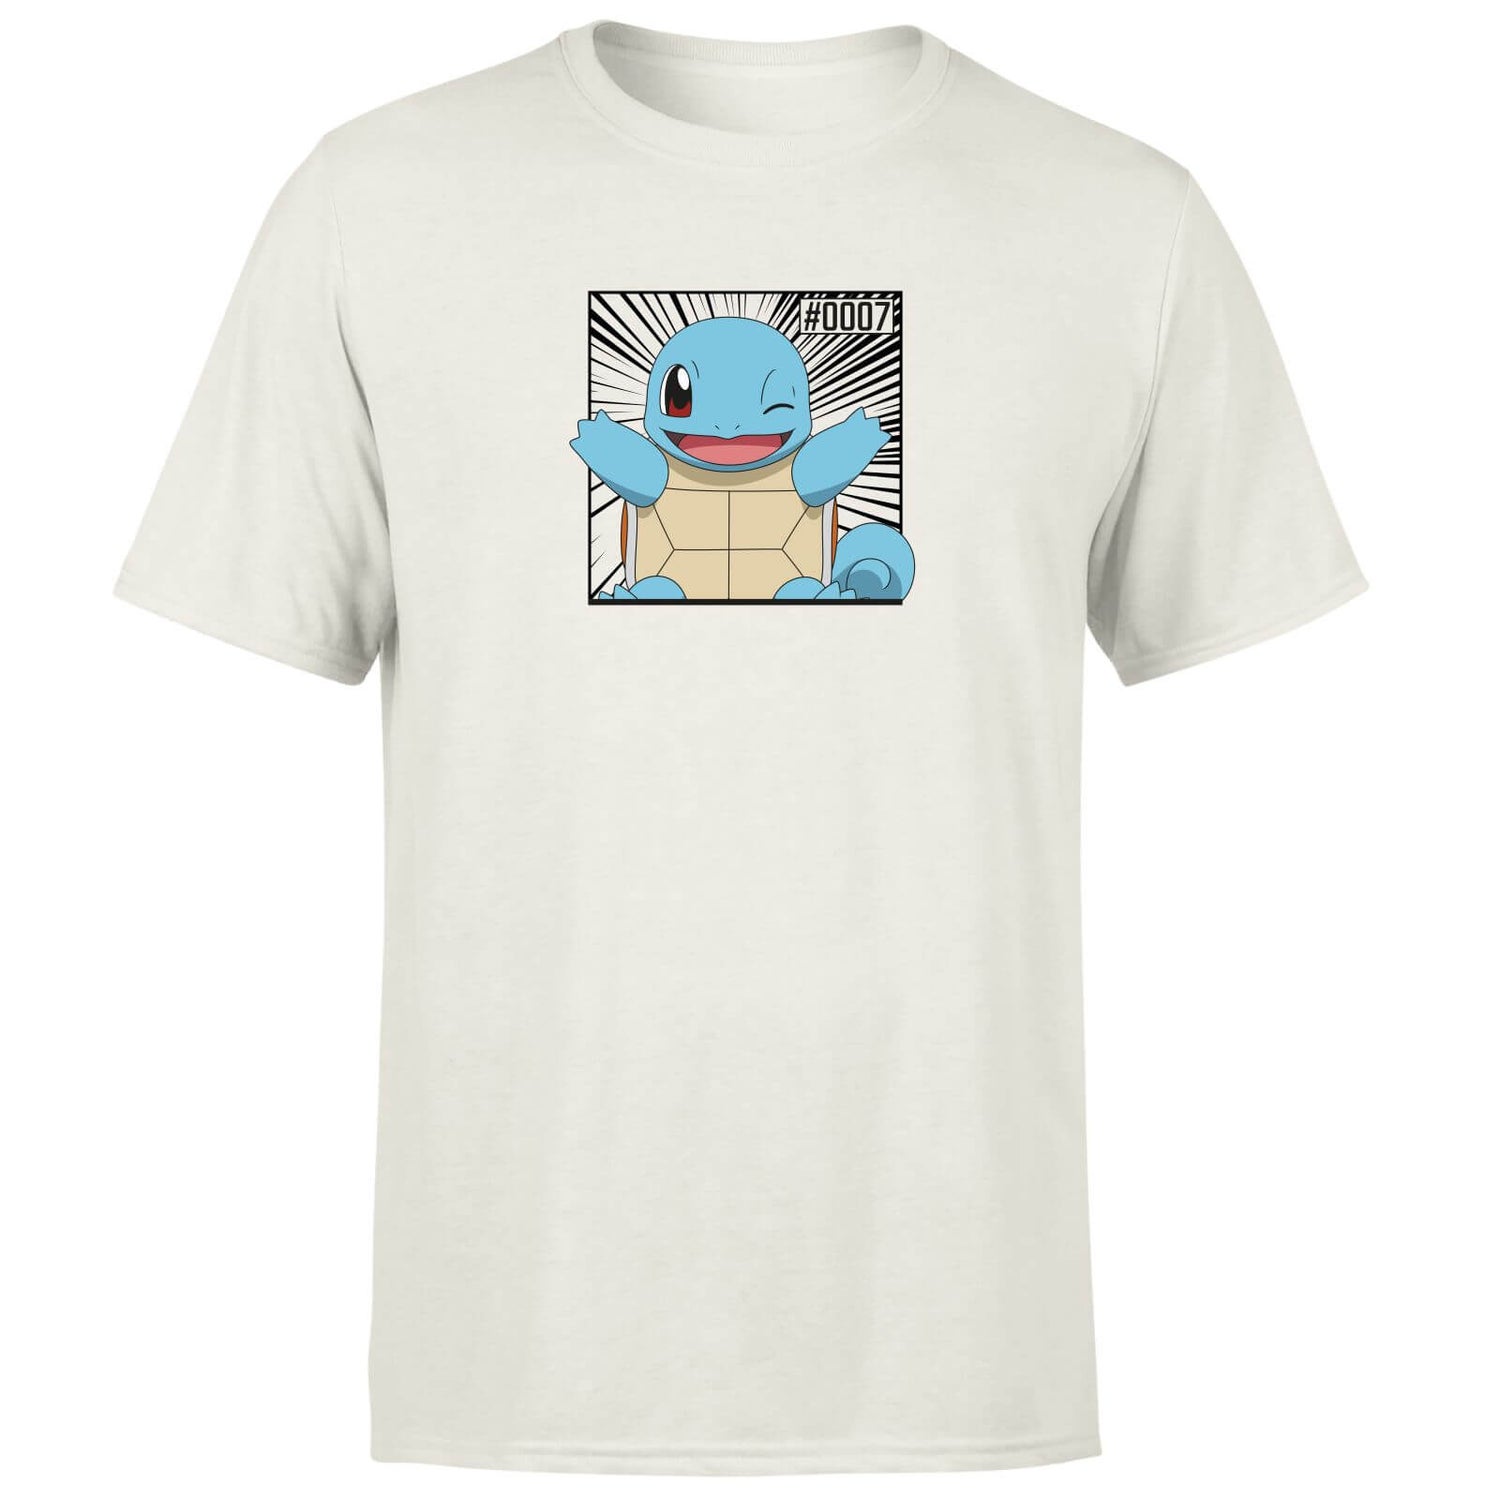 Pokémon Pokédex Squirtle #0007 Men's T-Shirt - Cream